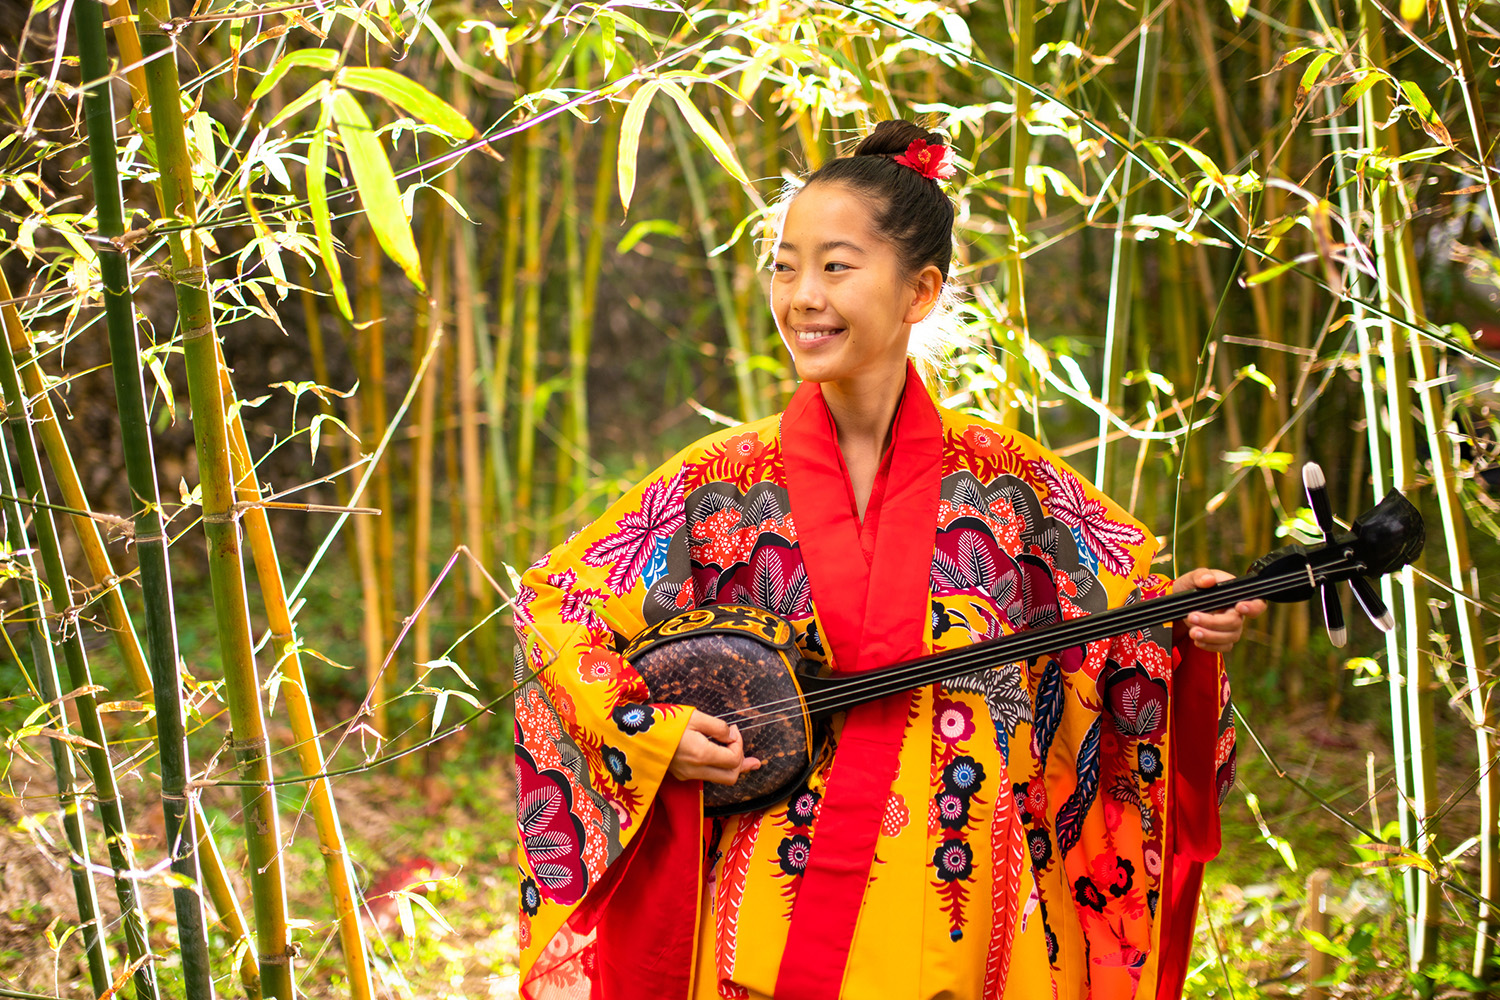 Menina vestida com um kimono estampado nas cores veremelha, amarelo e azul, segura um sanshin - instrumento musical de 3 cordas. Ao fundo, plantação de bambu.